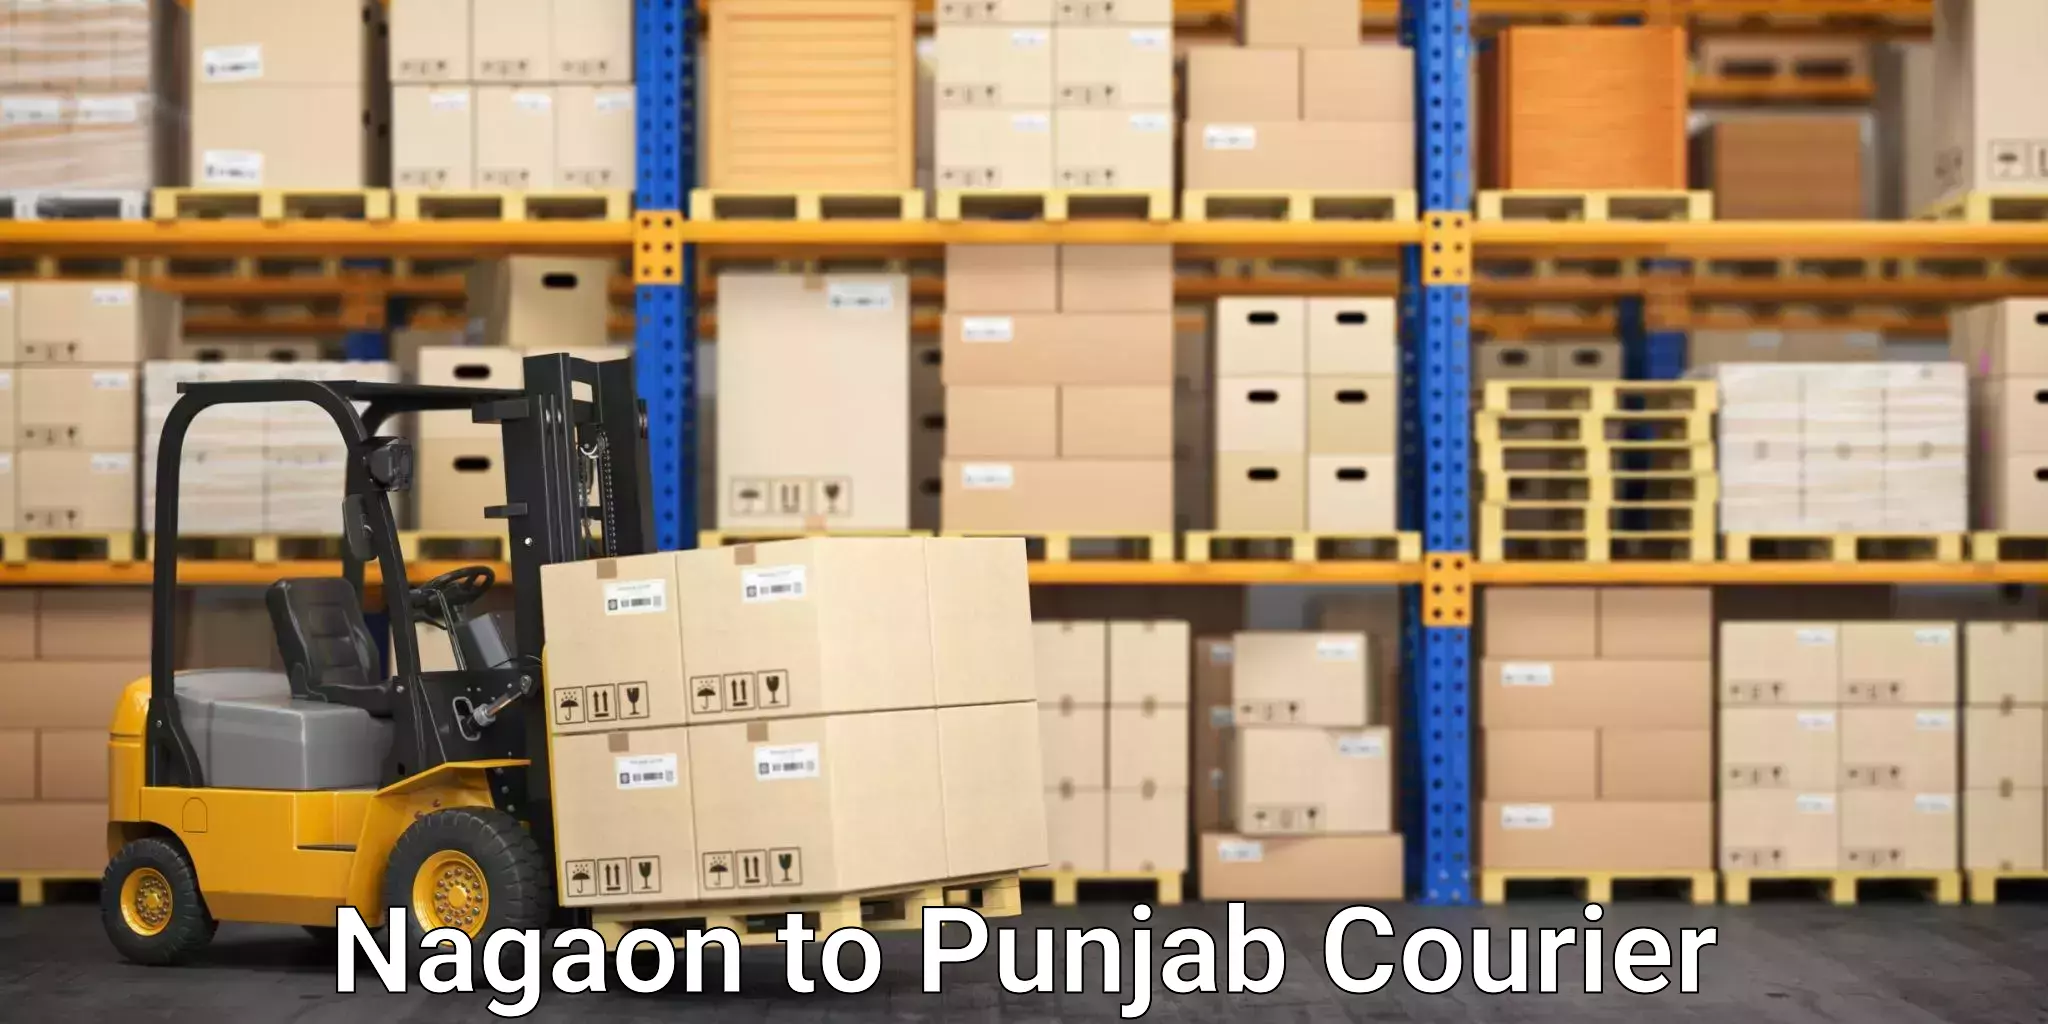 High-capacity parcel service Nagaon to Pathankot